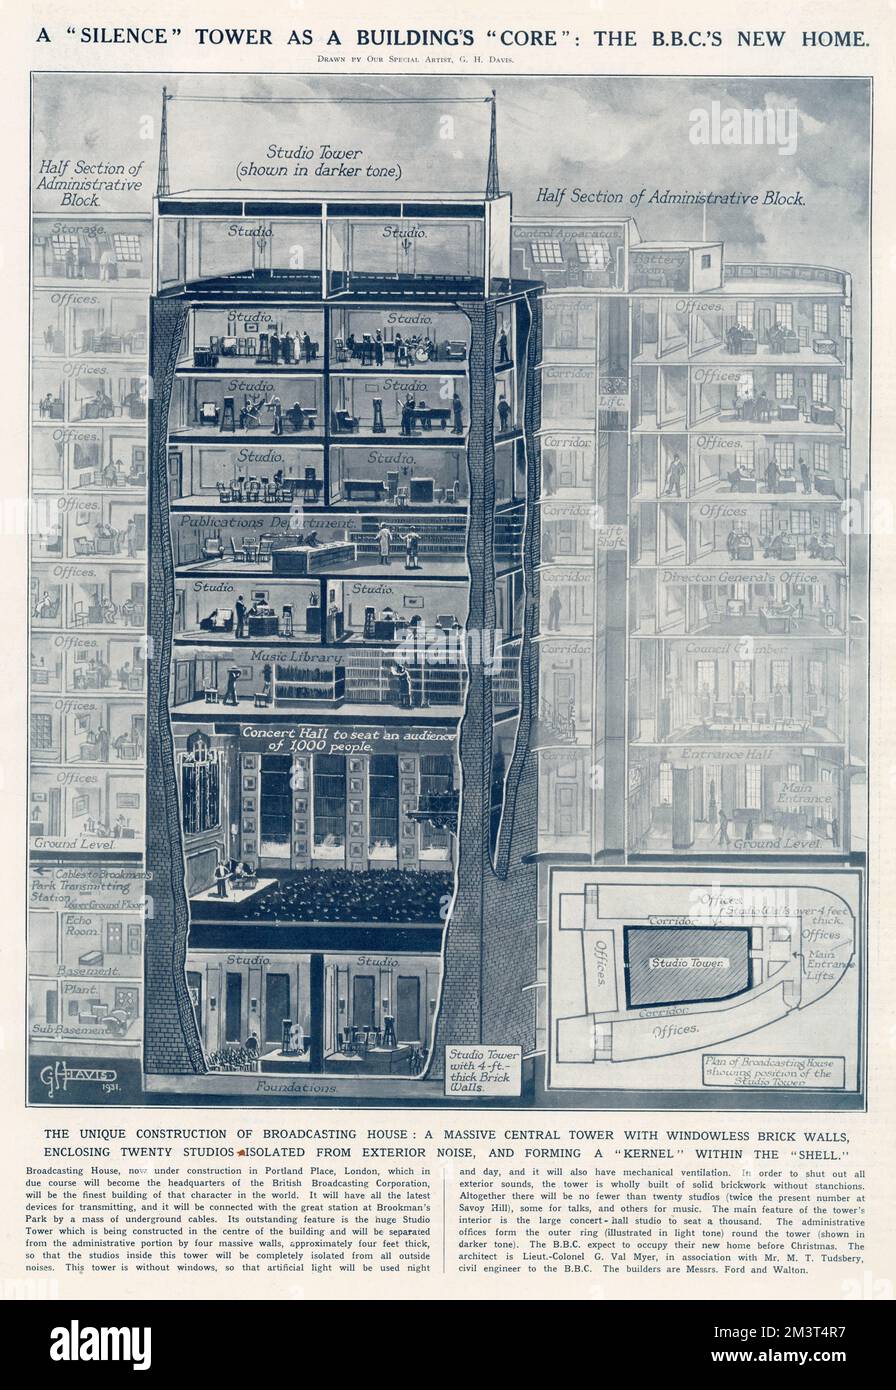 Diagramm von G. H. Davis zeigt das neue Broadcasting House in Portland Street, London (Hauptquartier von B.B.C.) und wie das Interieur aussehen wird, wenn es fertig ist. Stockfoto